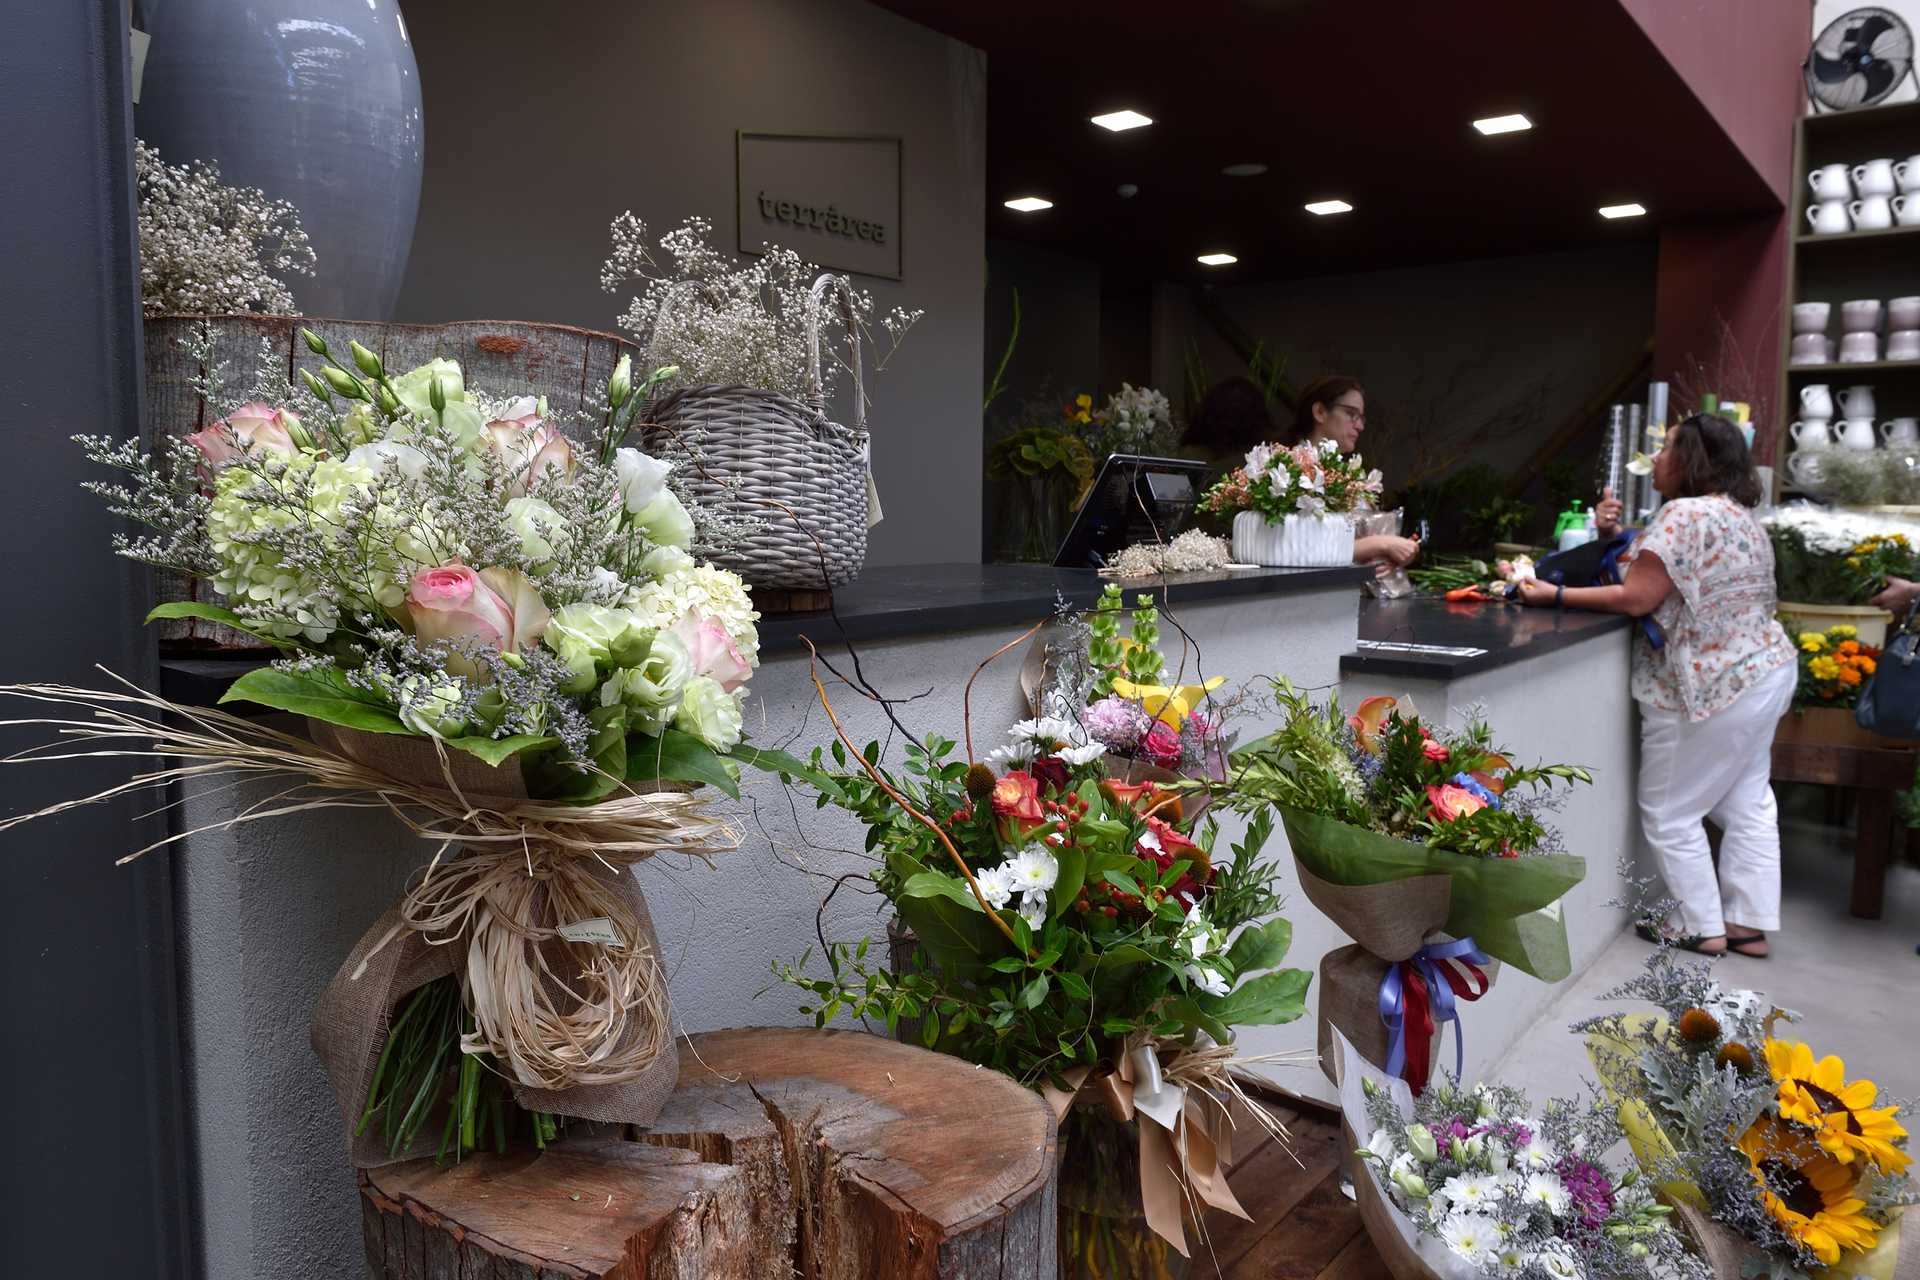 Loja Terrárea – Flores decoração e cafetaria